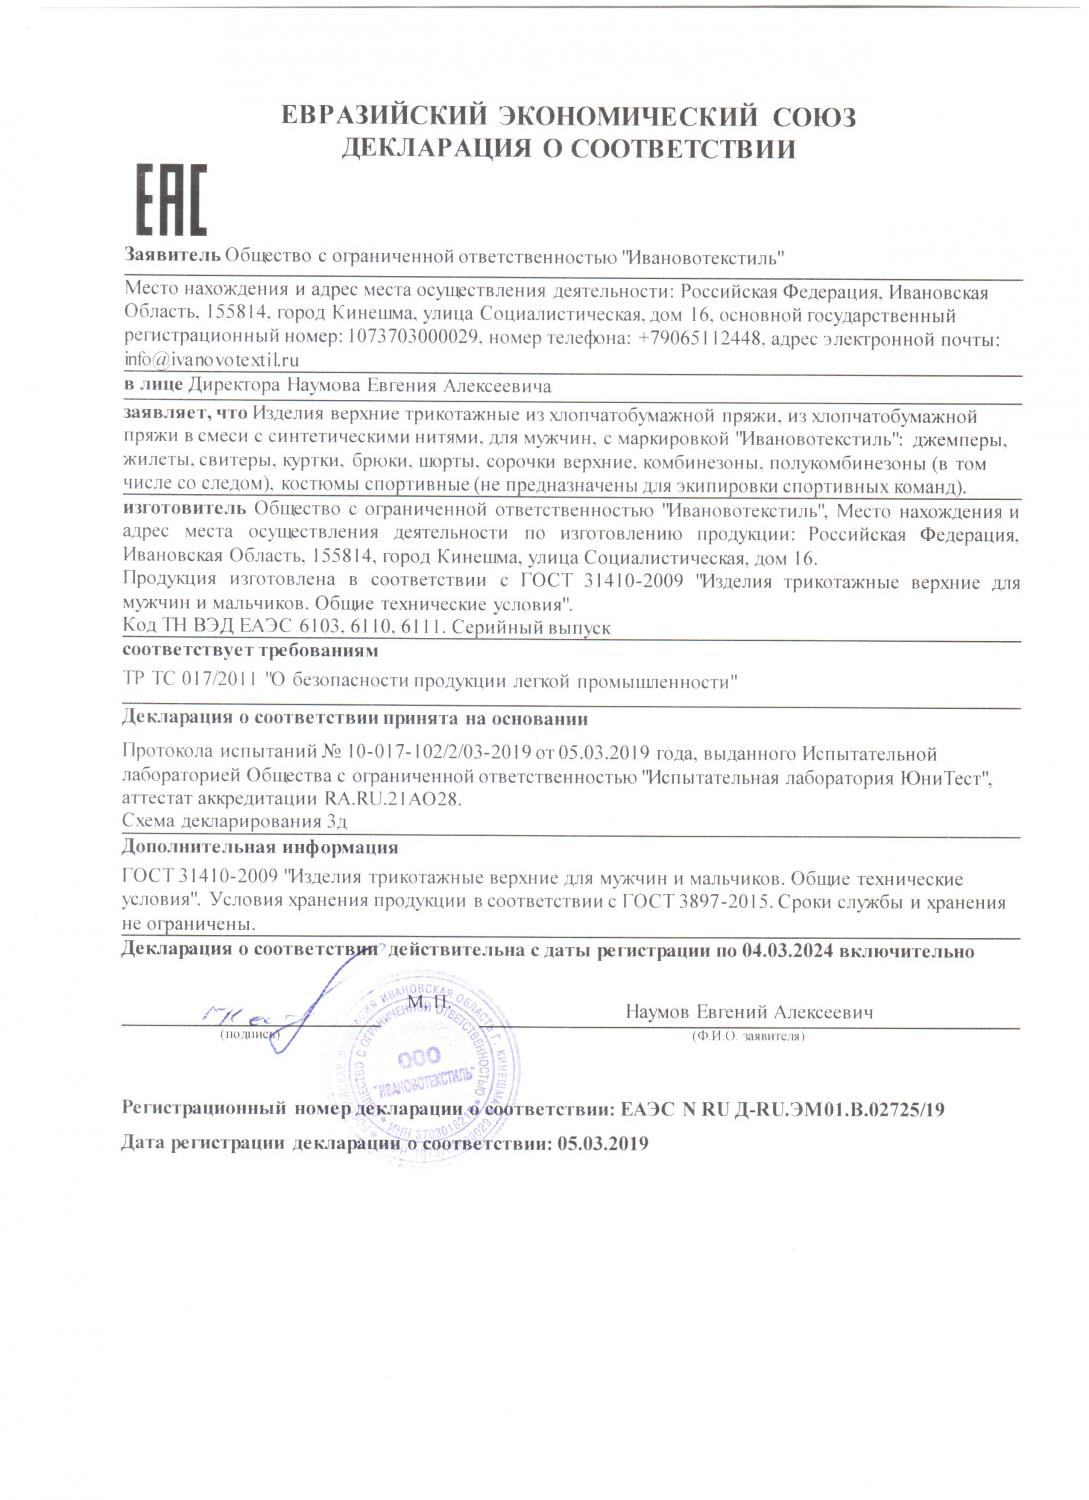 Декларация на изделия трикотажные верхние мужские до 04.03.2024 г.